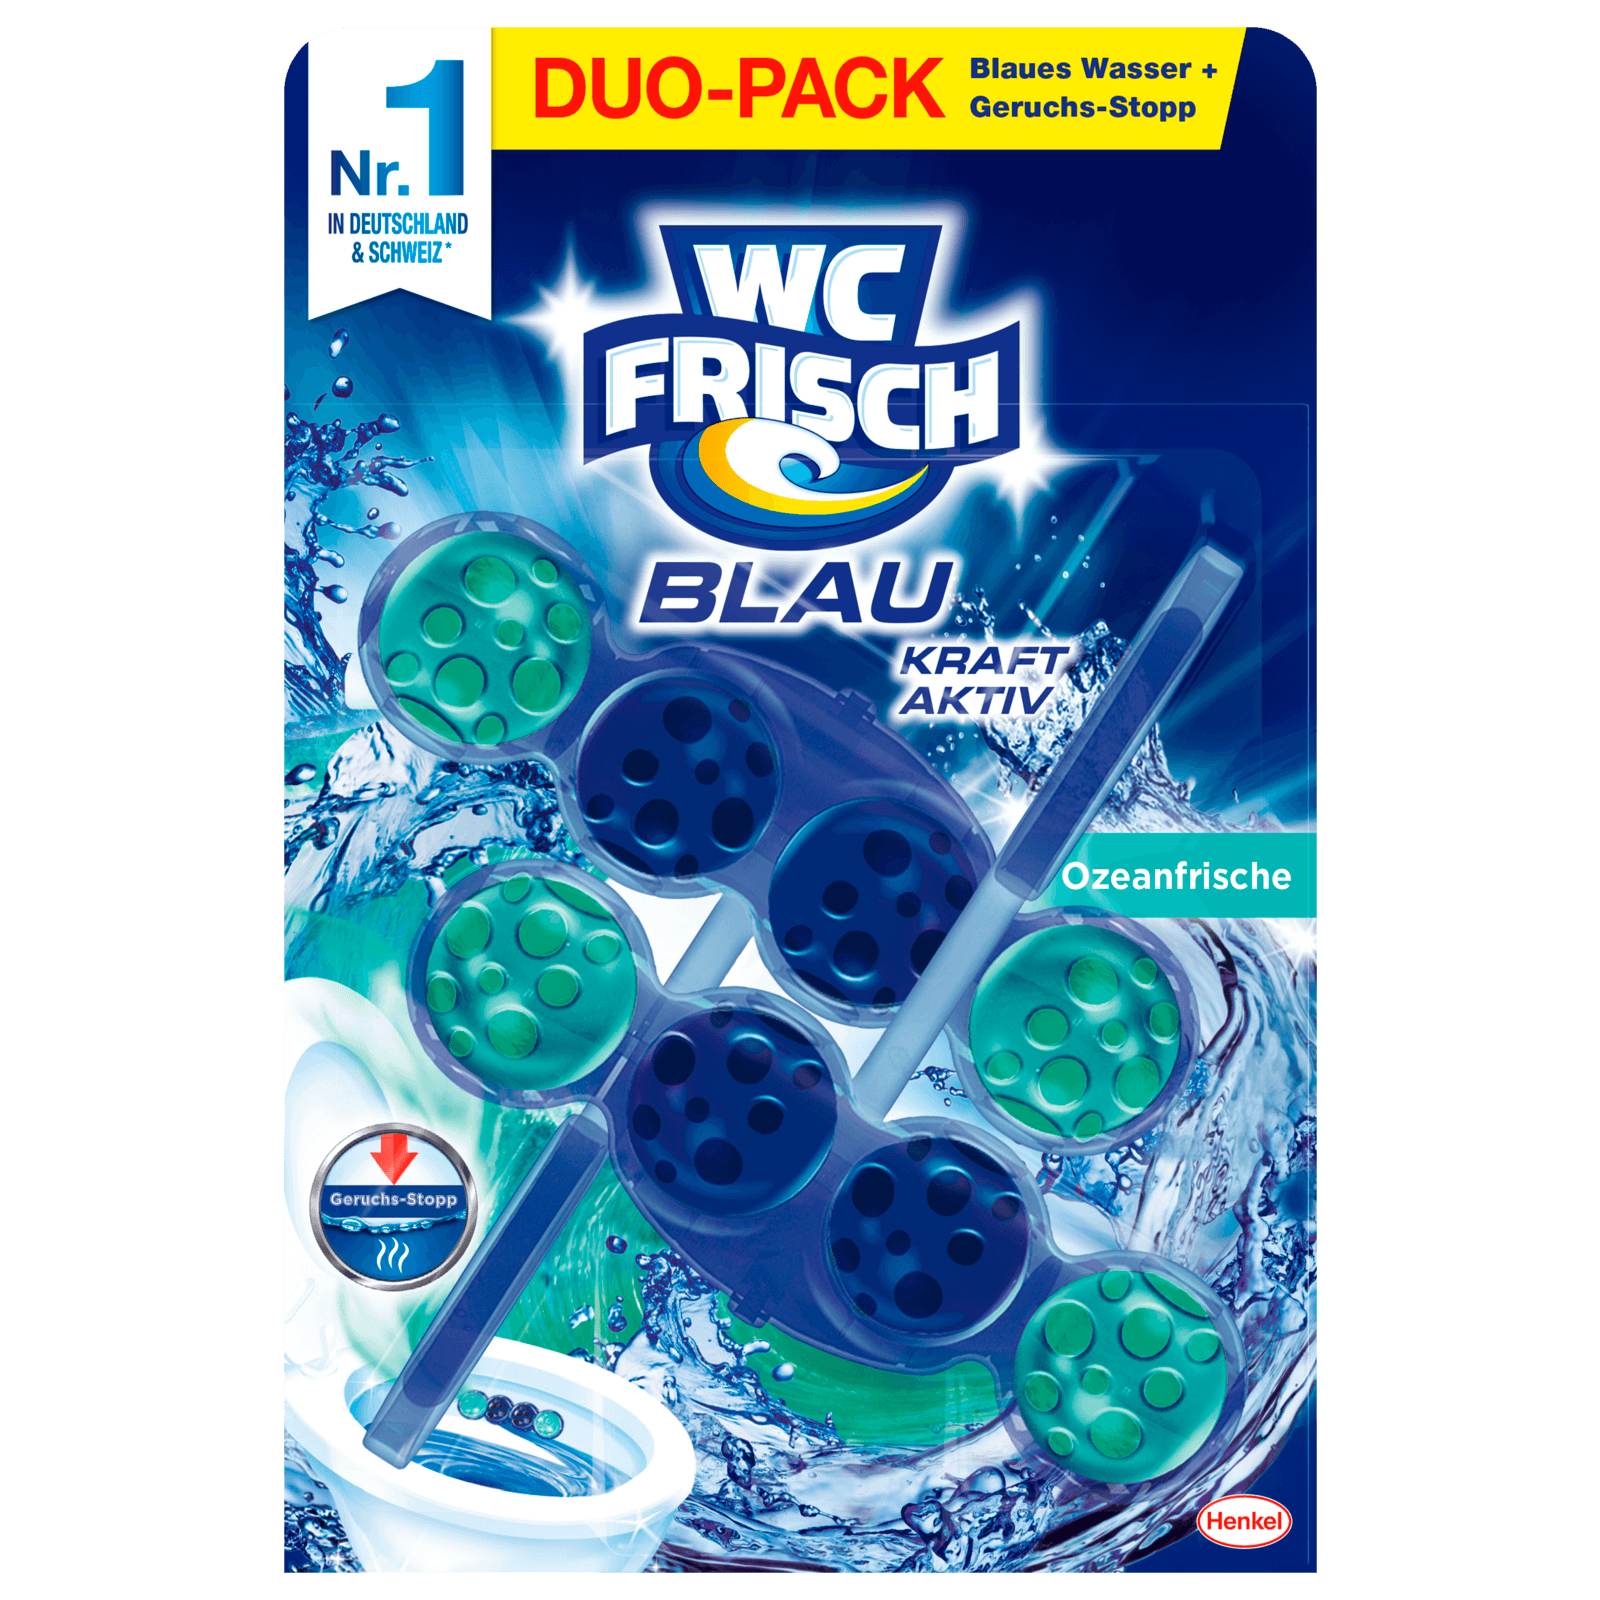 100g Frisch WC Kraft-Aktiv Blau Ozeanfrische REWE bei Duo-Pack online bestellen!